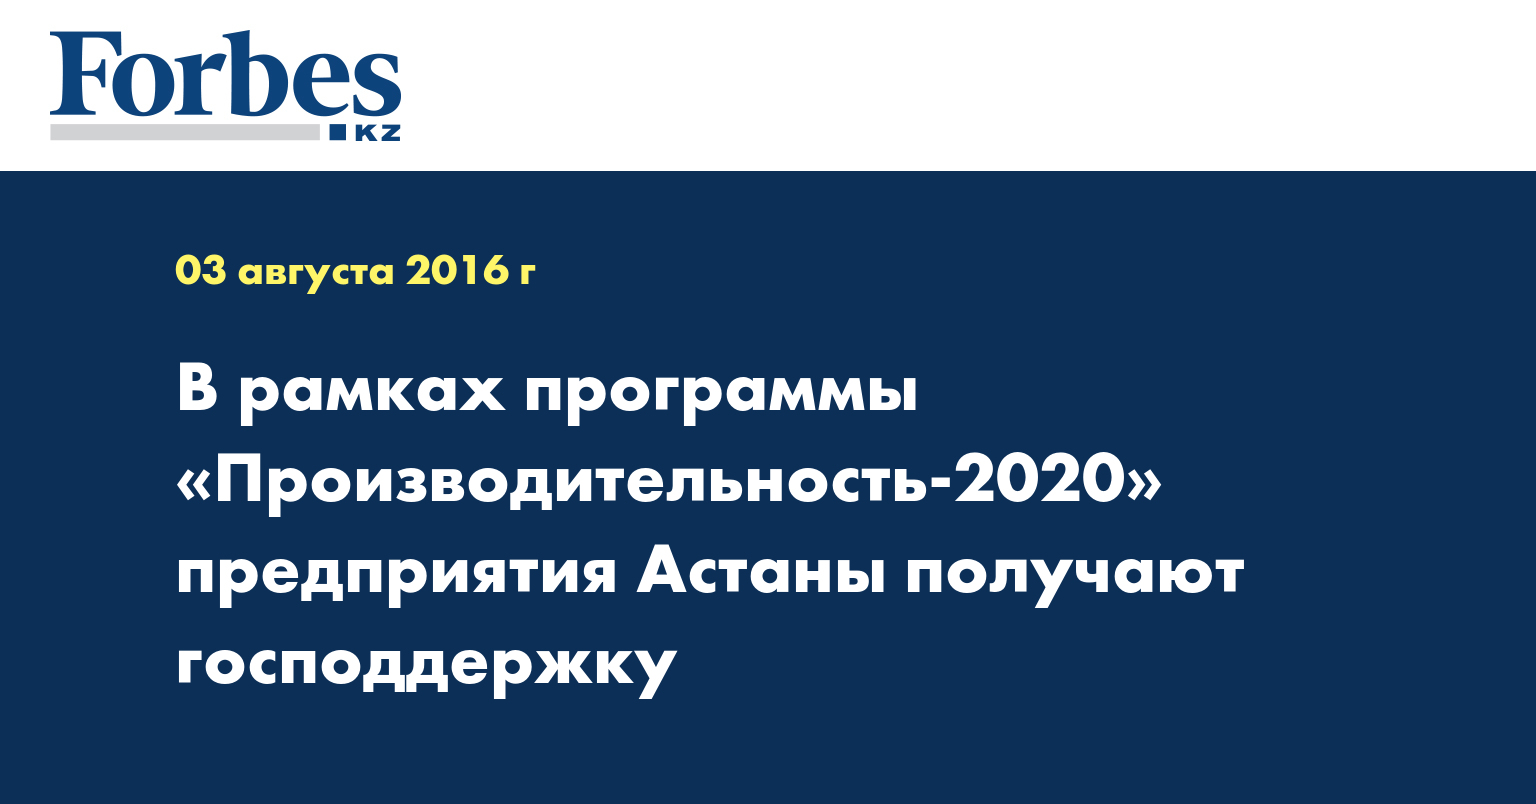 В рамках программы «Производительность-2020» предприятия Астаны получают господдержку